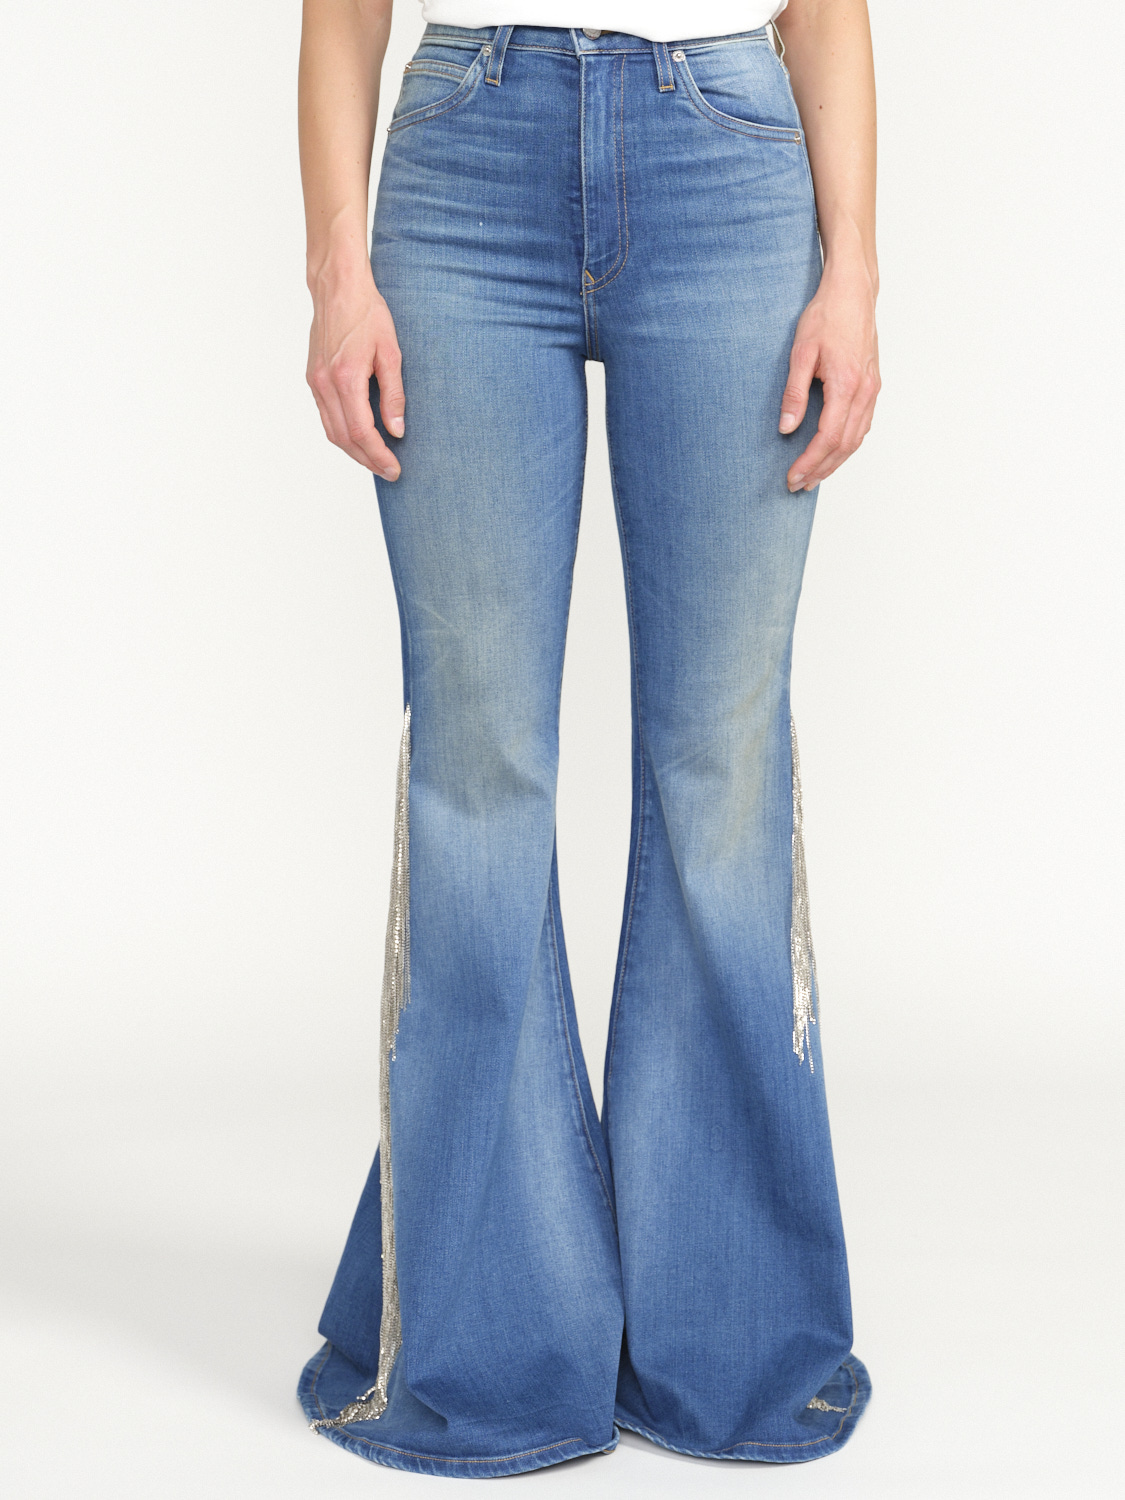 Cout De La Liberte Heidi - Pantalon en jean taille basse avec détails de franges scintillantes blau 25